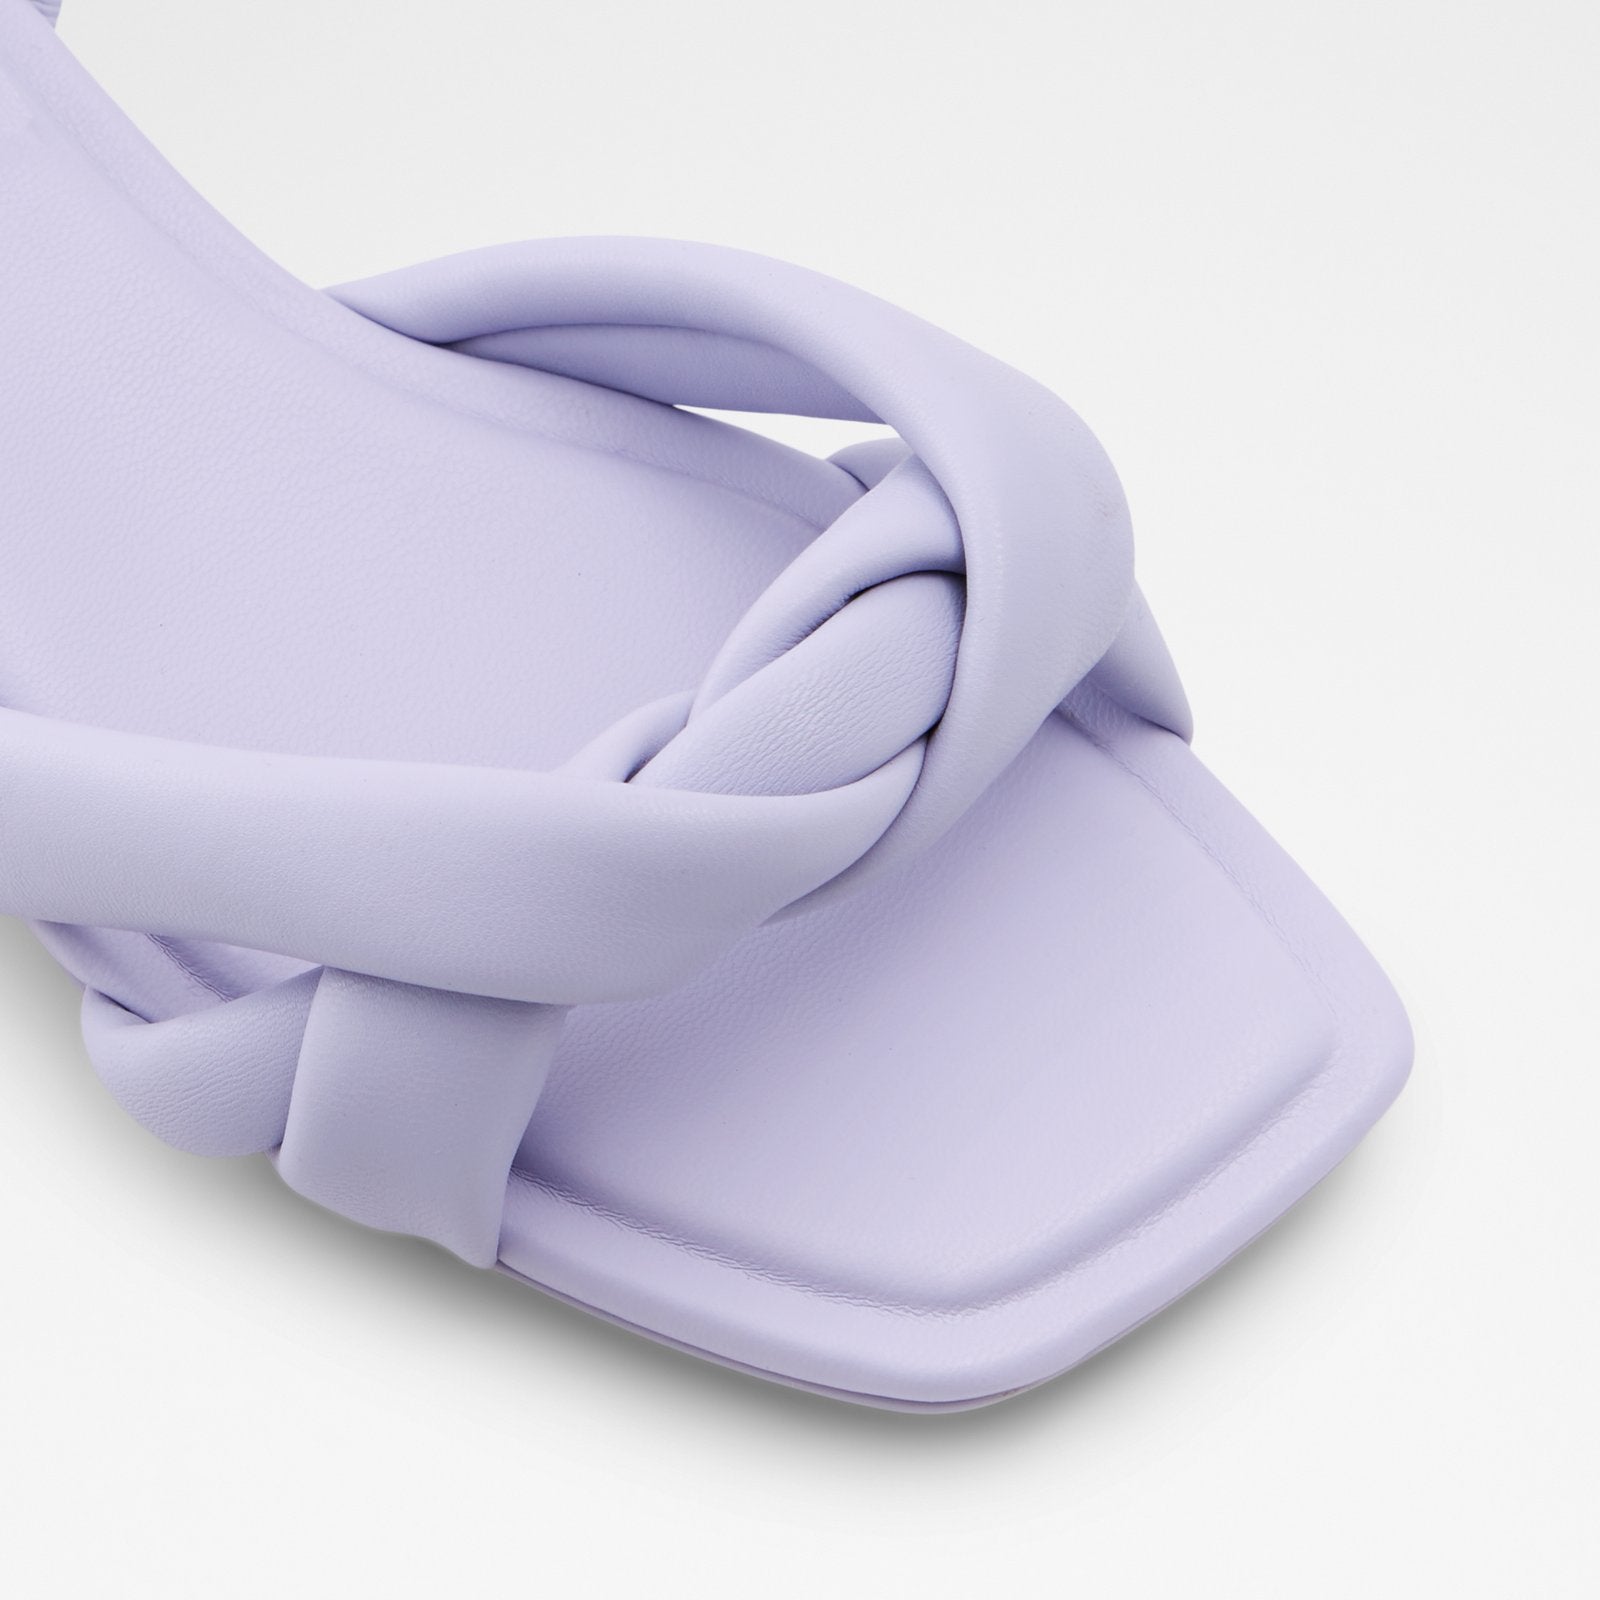 Buttercupp Women Shoes - Purple - ALDO KSA